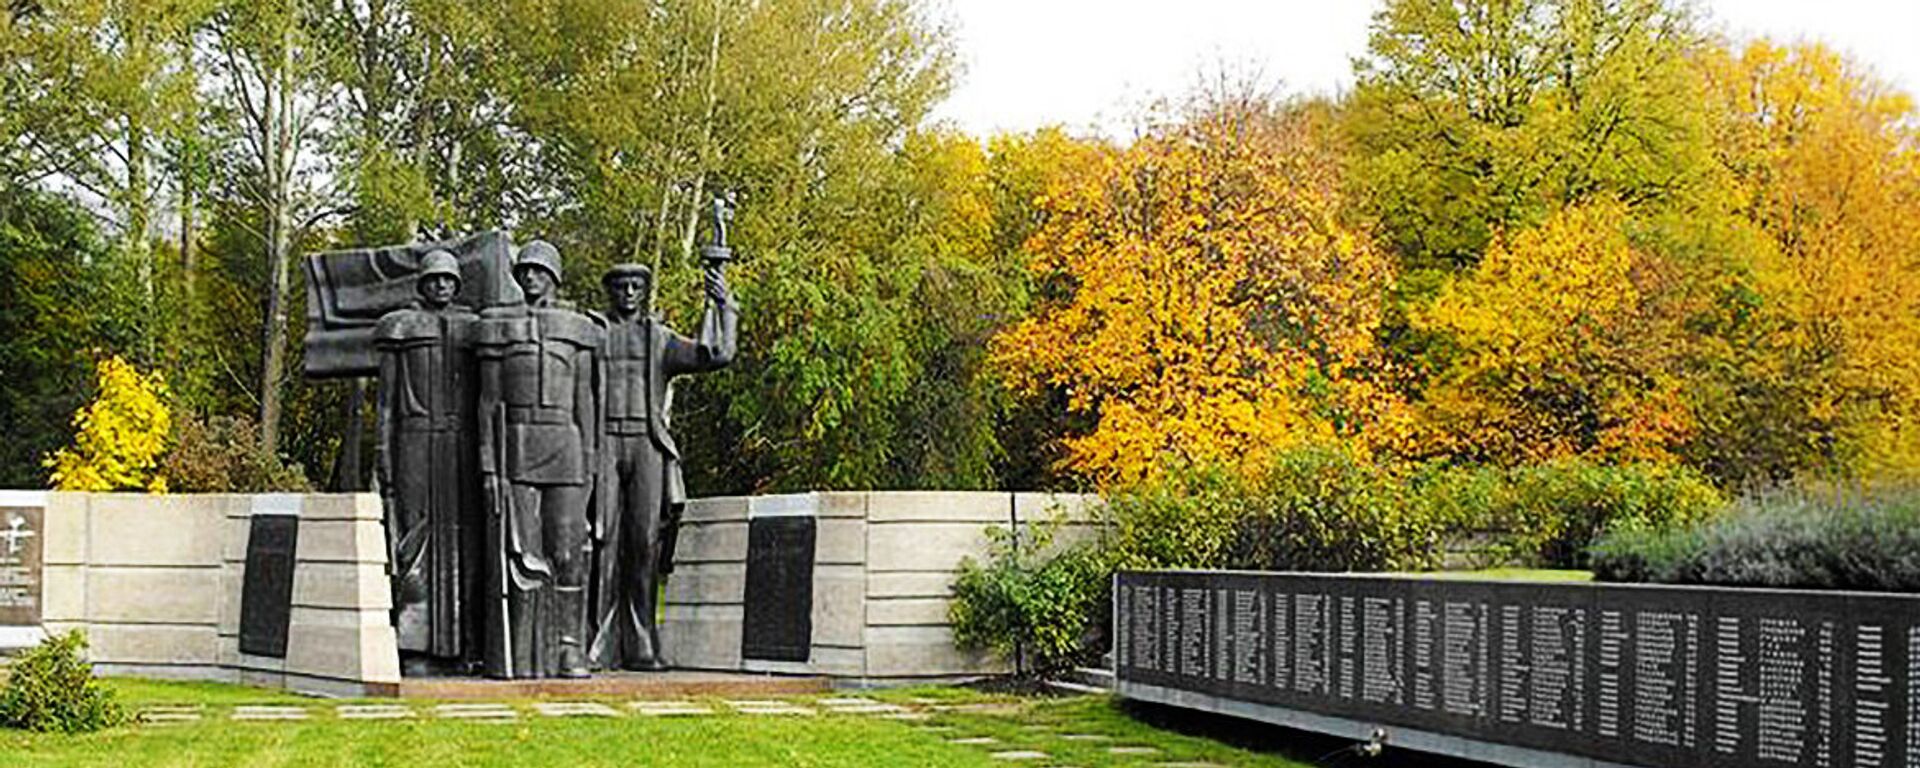 Paminklas kariams išvaduotojams Klaipėdoje - Sputnik Lietuva, 1920, 20.04.2022